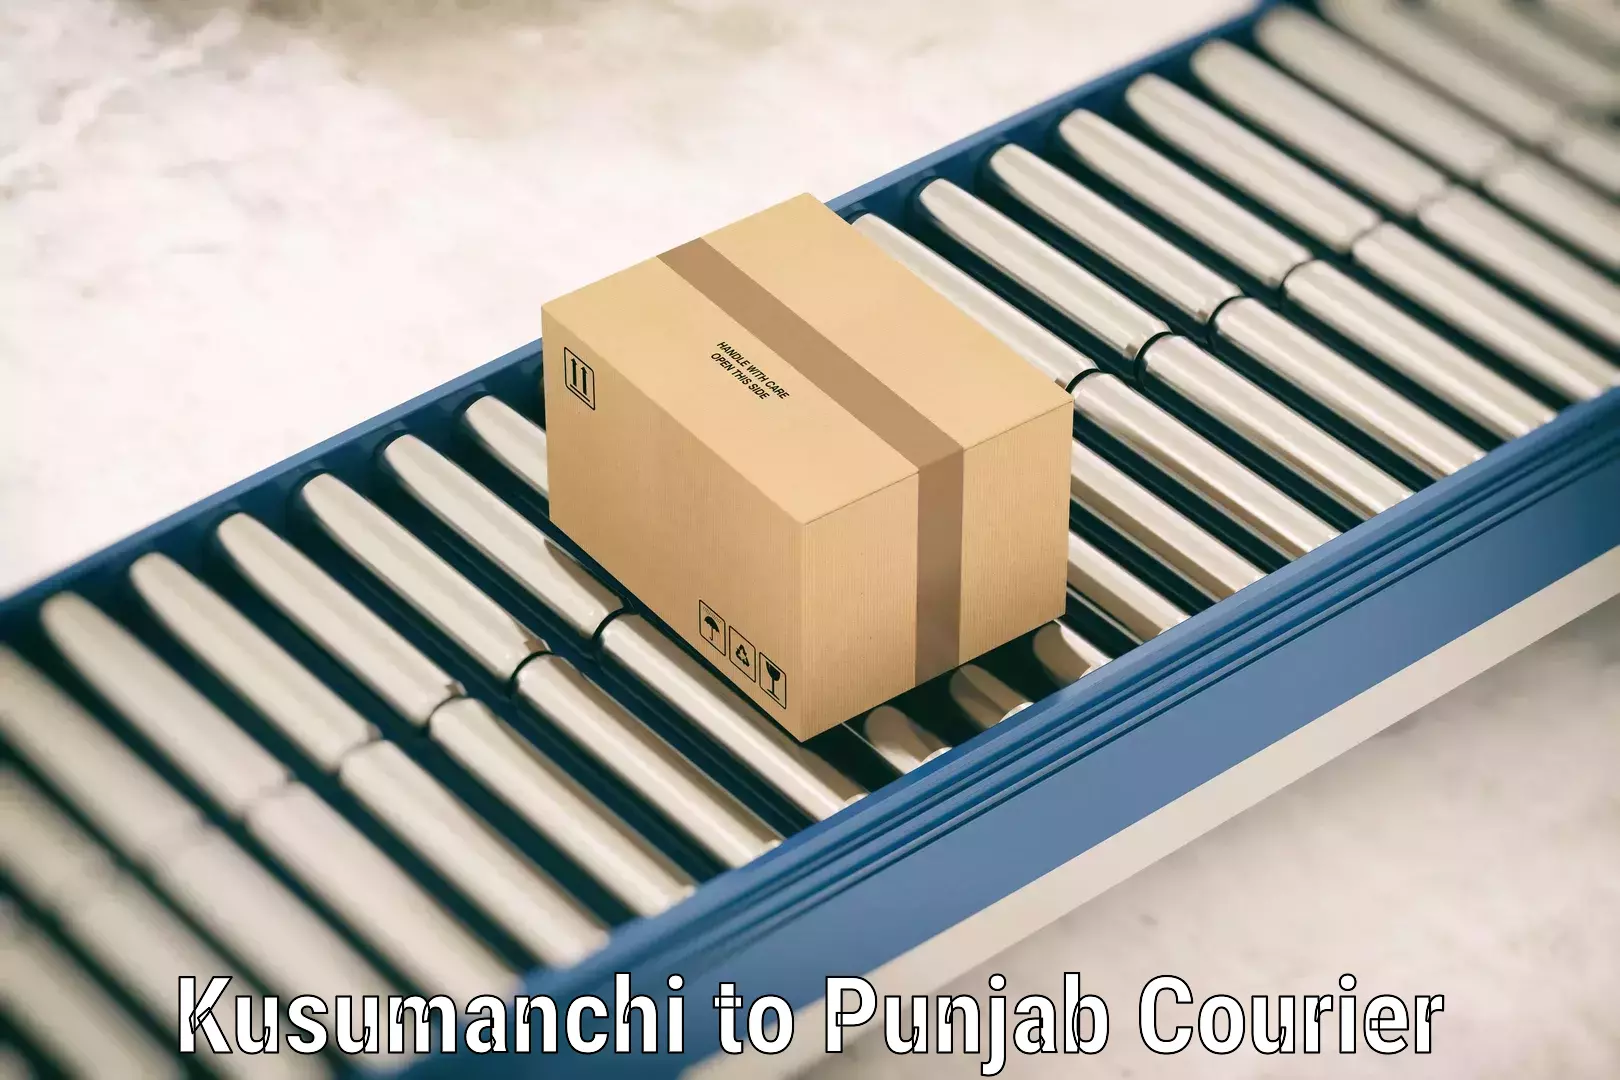 Luggage shipment tracking Kusumanchi to Mehta Chowk